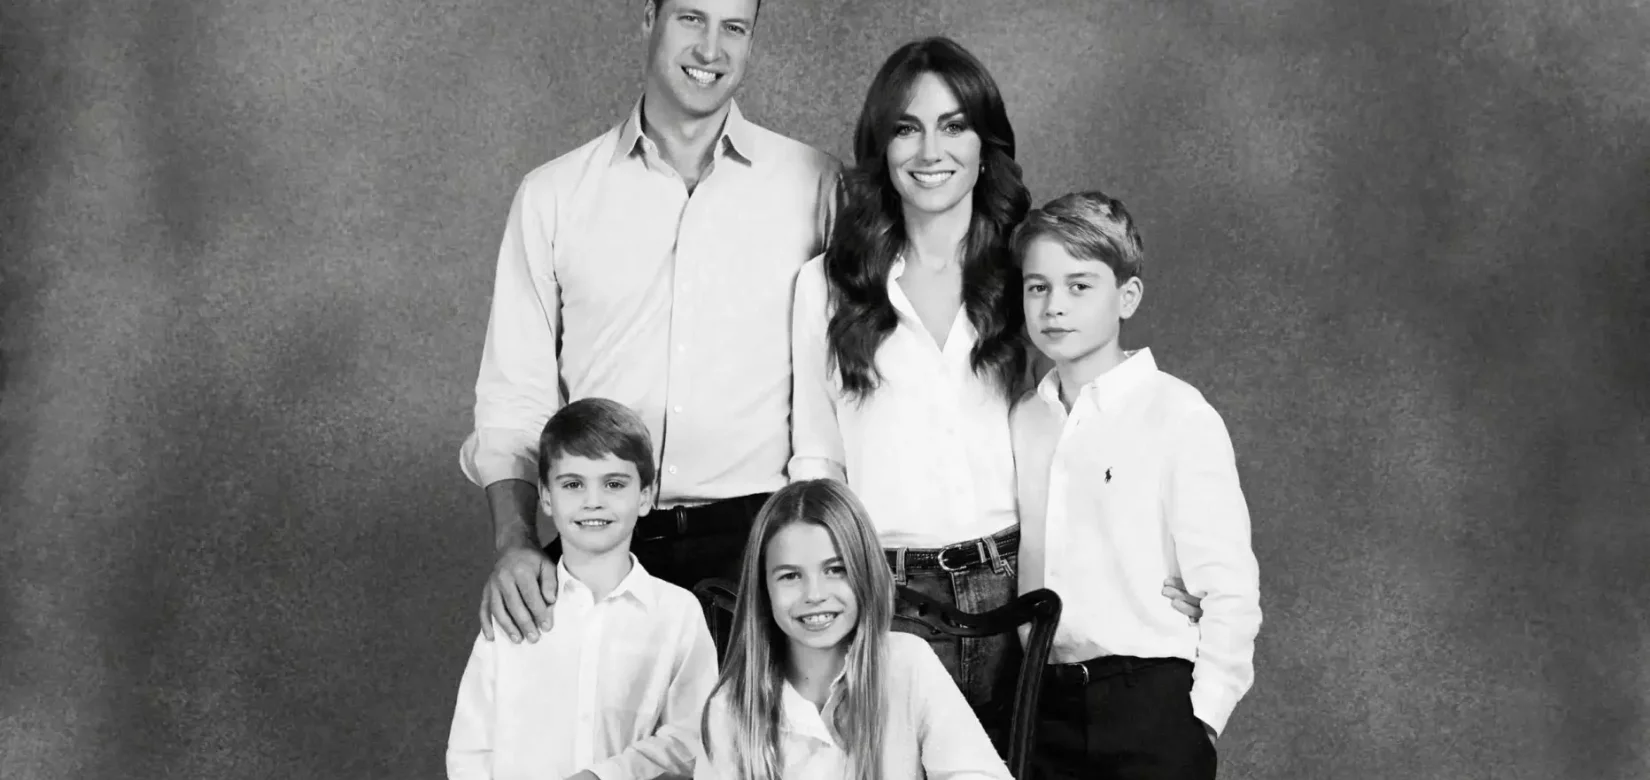 Πρίγκιπας Γουίλιαμ, Κέιτ Μίντλετον και τα παιδιά τους χαλαροί με τζιν στην χριστουγεννιάτικη κάρτα